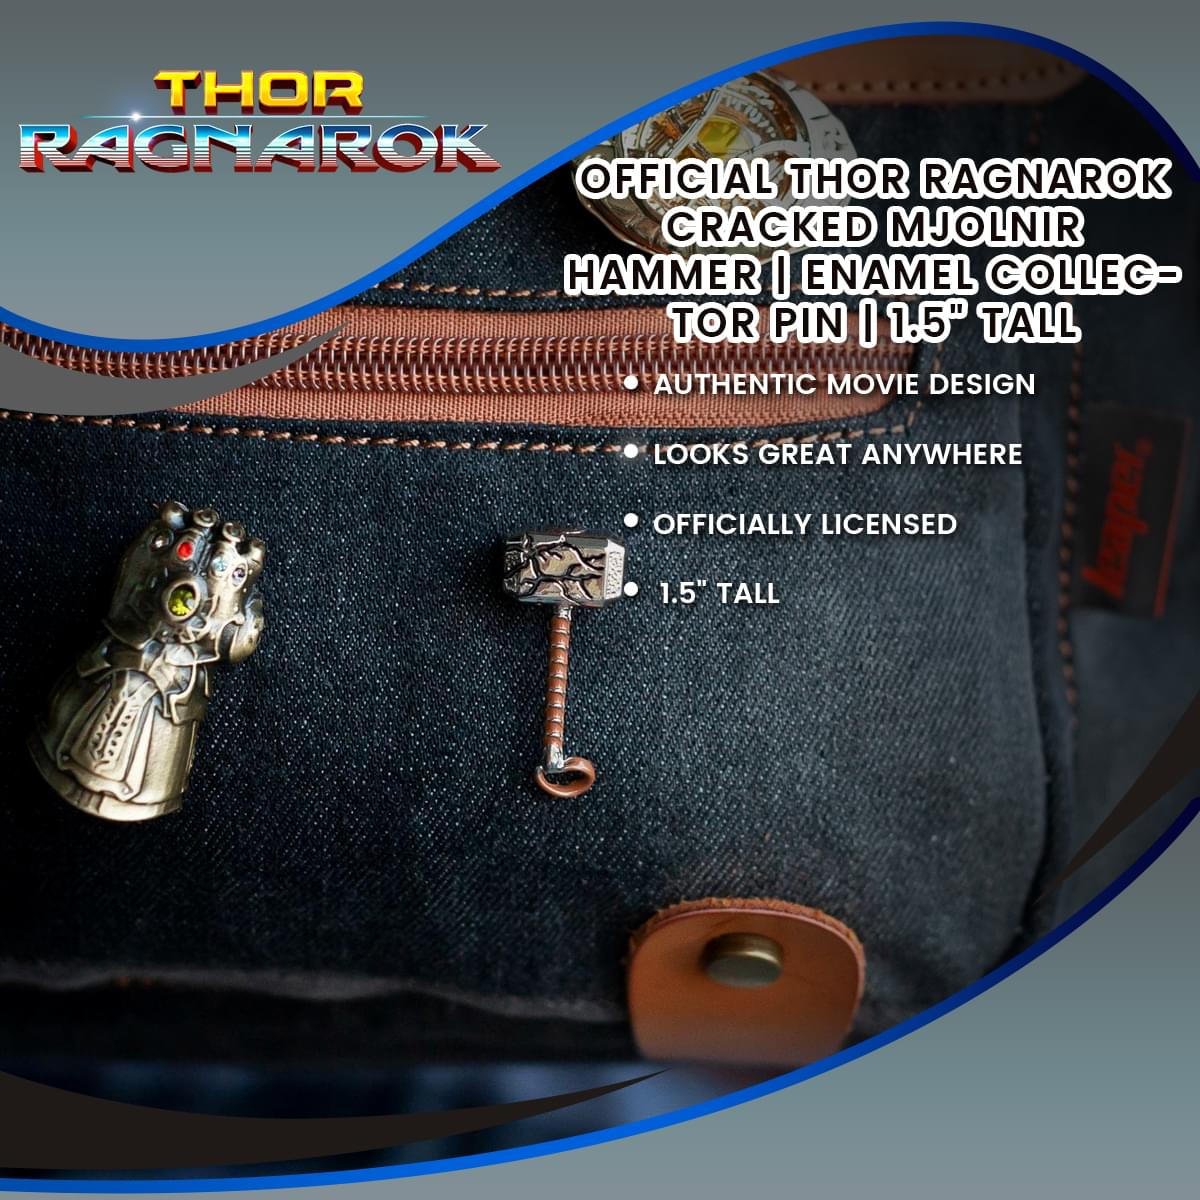 OFFICIAL Thor Ragnarok Cracked Mjolnir Hammer | Enamel Collector Pin | 1.5" Tall